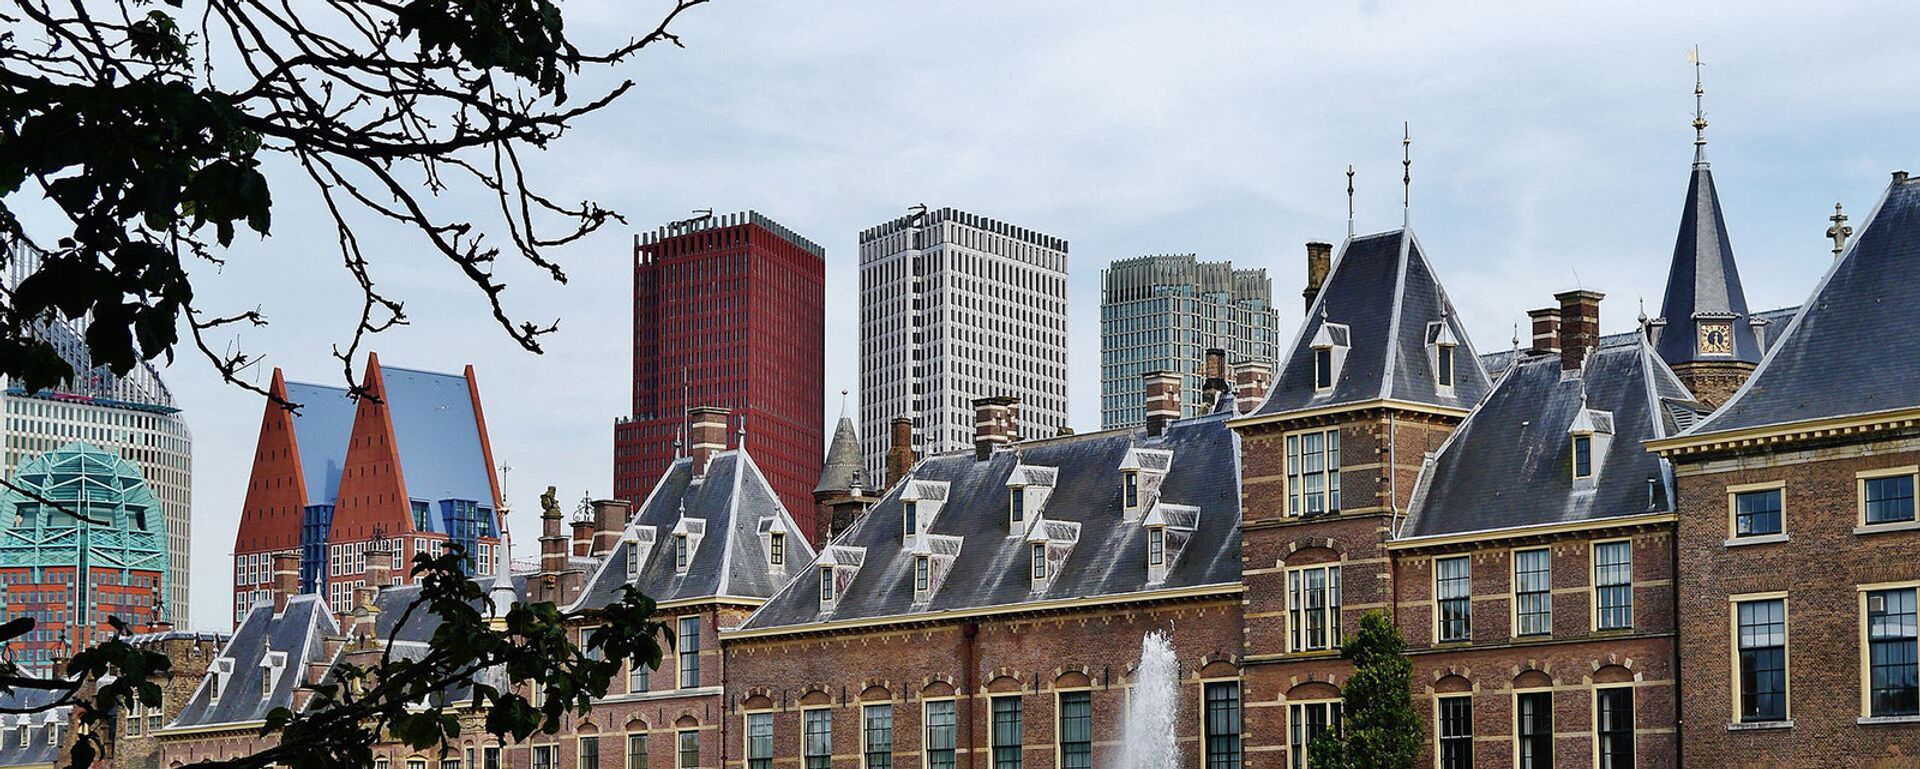 Здание Генеральных штатов в Гааге, Нидерланды - Sputnik Արմենիա, 1920, 23.06.2021